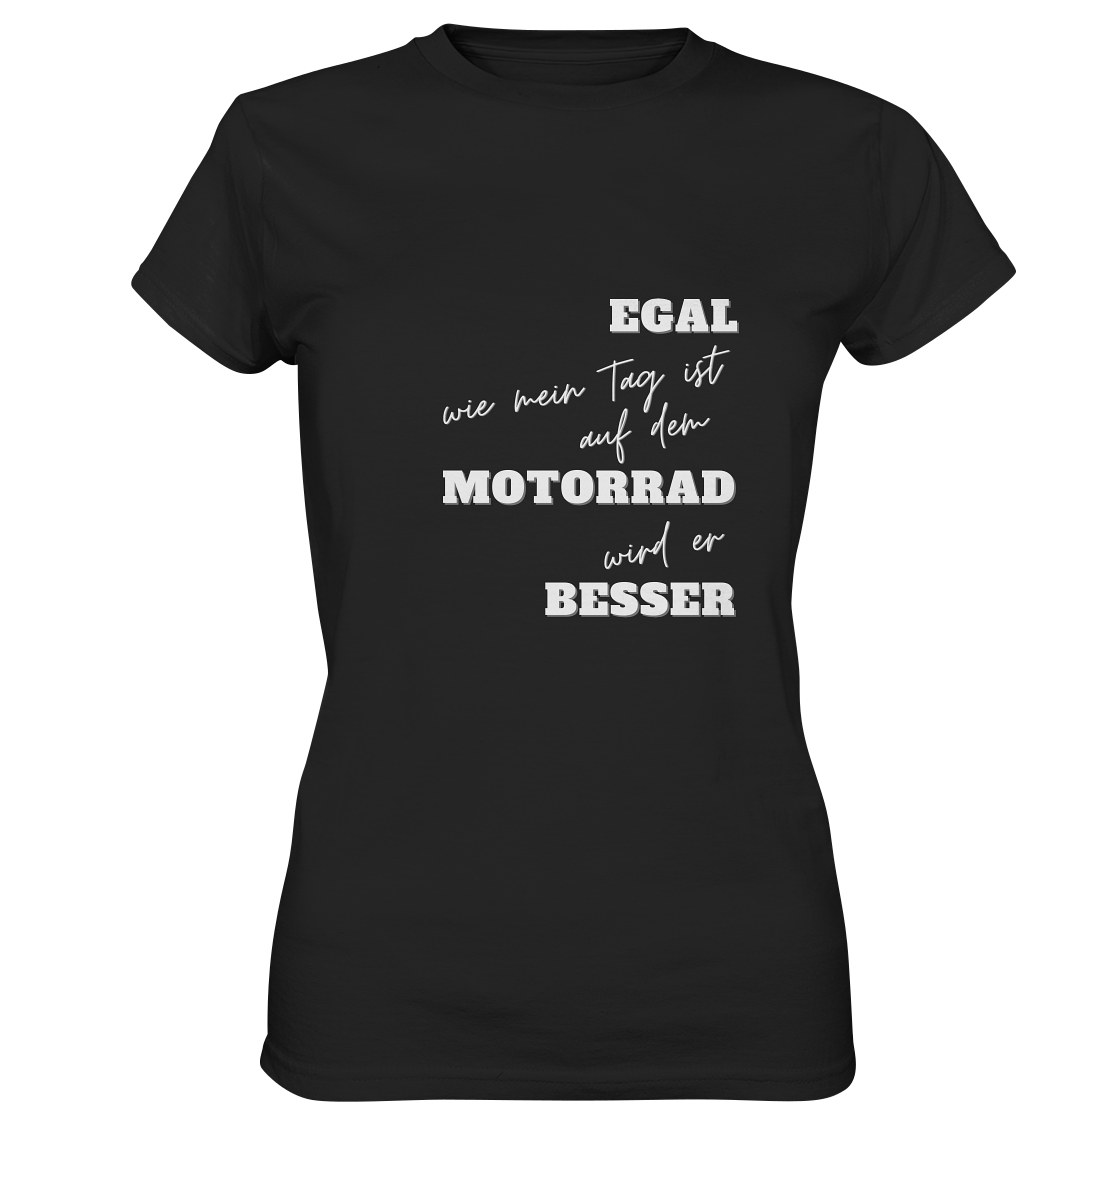 Damen Premium Motorrad-T-Shirt mit weißem Aufdruck: "Egal, wie mein Tag ist, auf dem Motorrad wird er besser" | schwarz